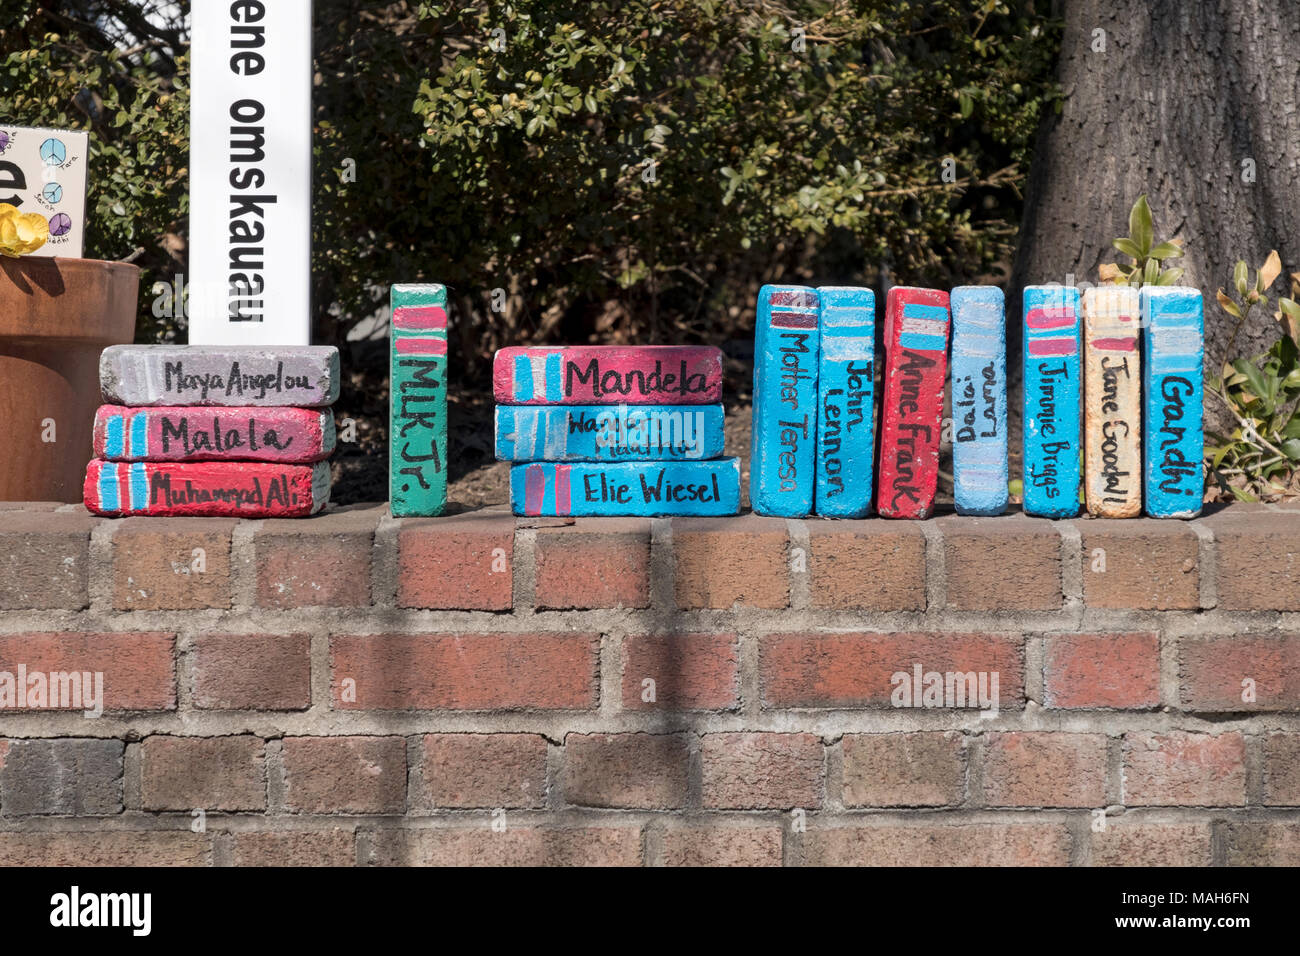 Clevere Dekoration außerhalb verstreut Bücher in Croton-on-Hudson Wo Backsteine bunt bemalte Waren wie Bücher. Stockfoto